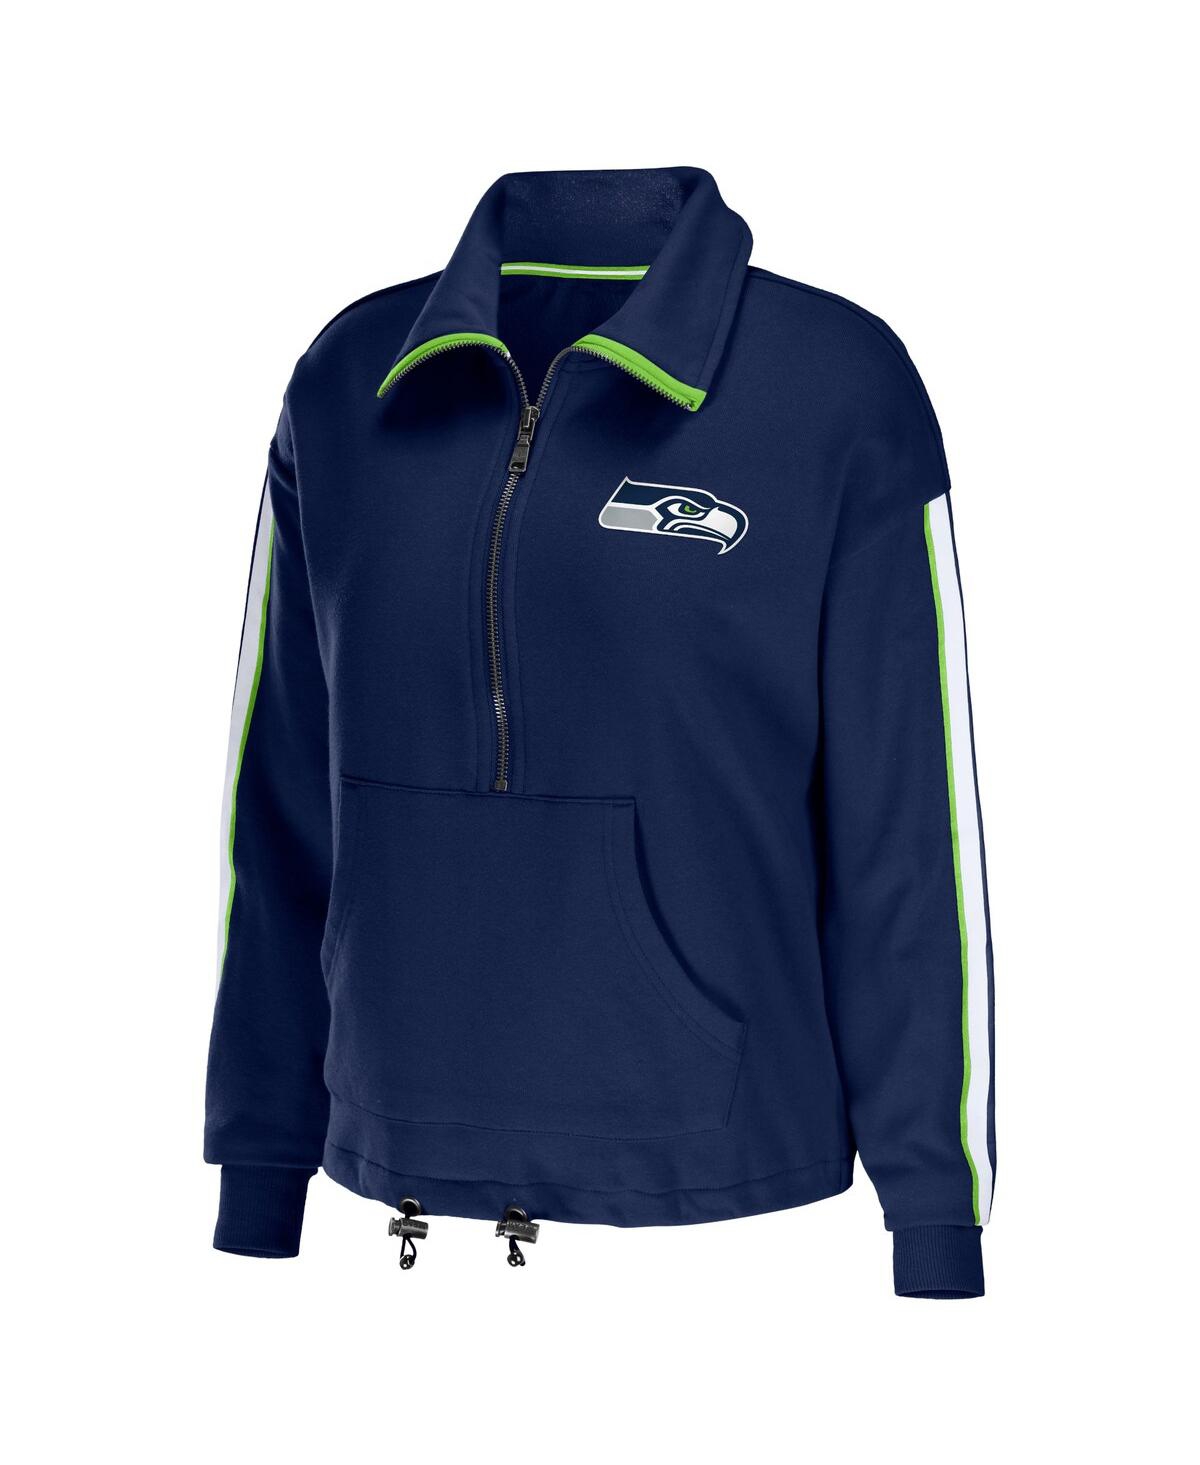 Shop Wear By Erin Andrews Women's  College Navy Seattle Seahawks Logo Stripe Half-zip Top